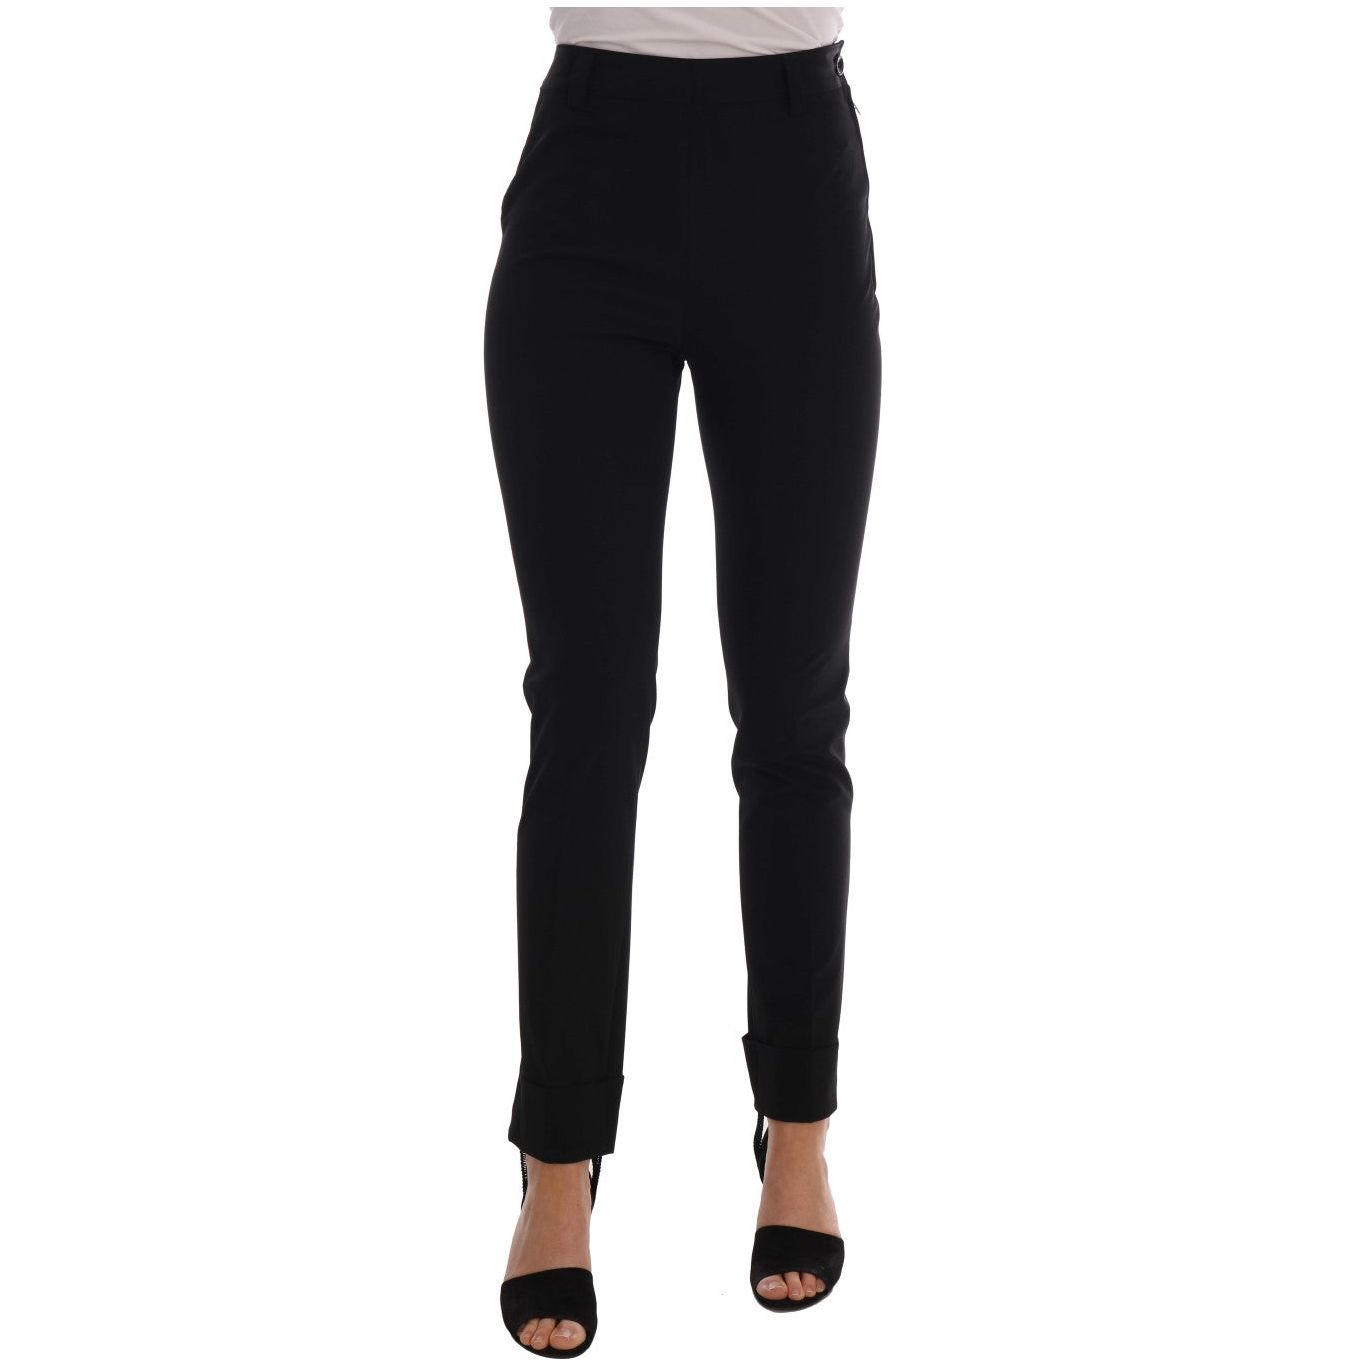 Ermanno Scervino Sleek Black Stirrup Leggings black-stretch-leggings-pants Jeans & Pants 495914-black-stretch-leggings-pants.jpg